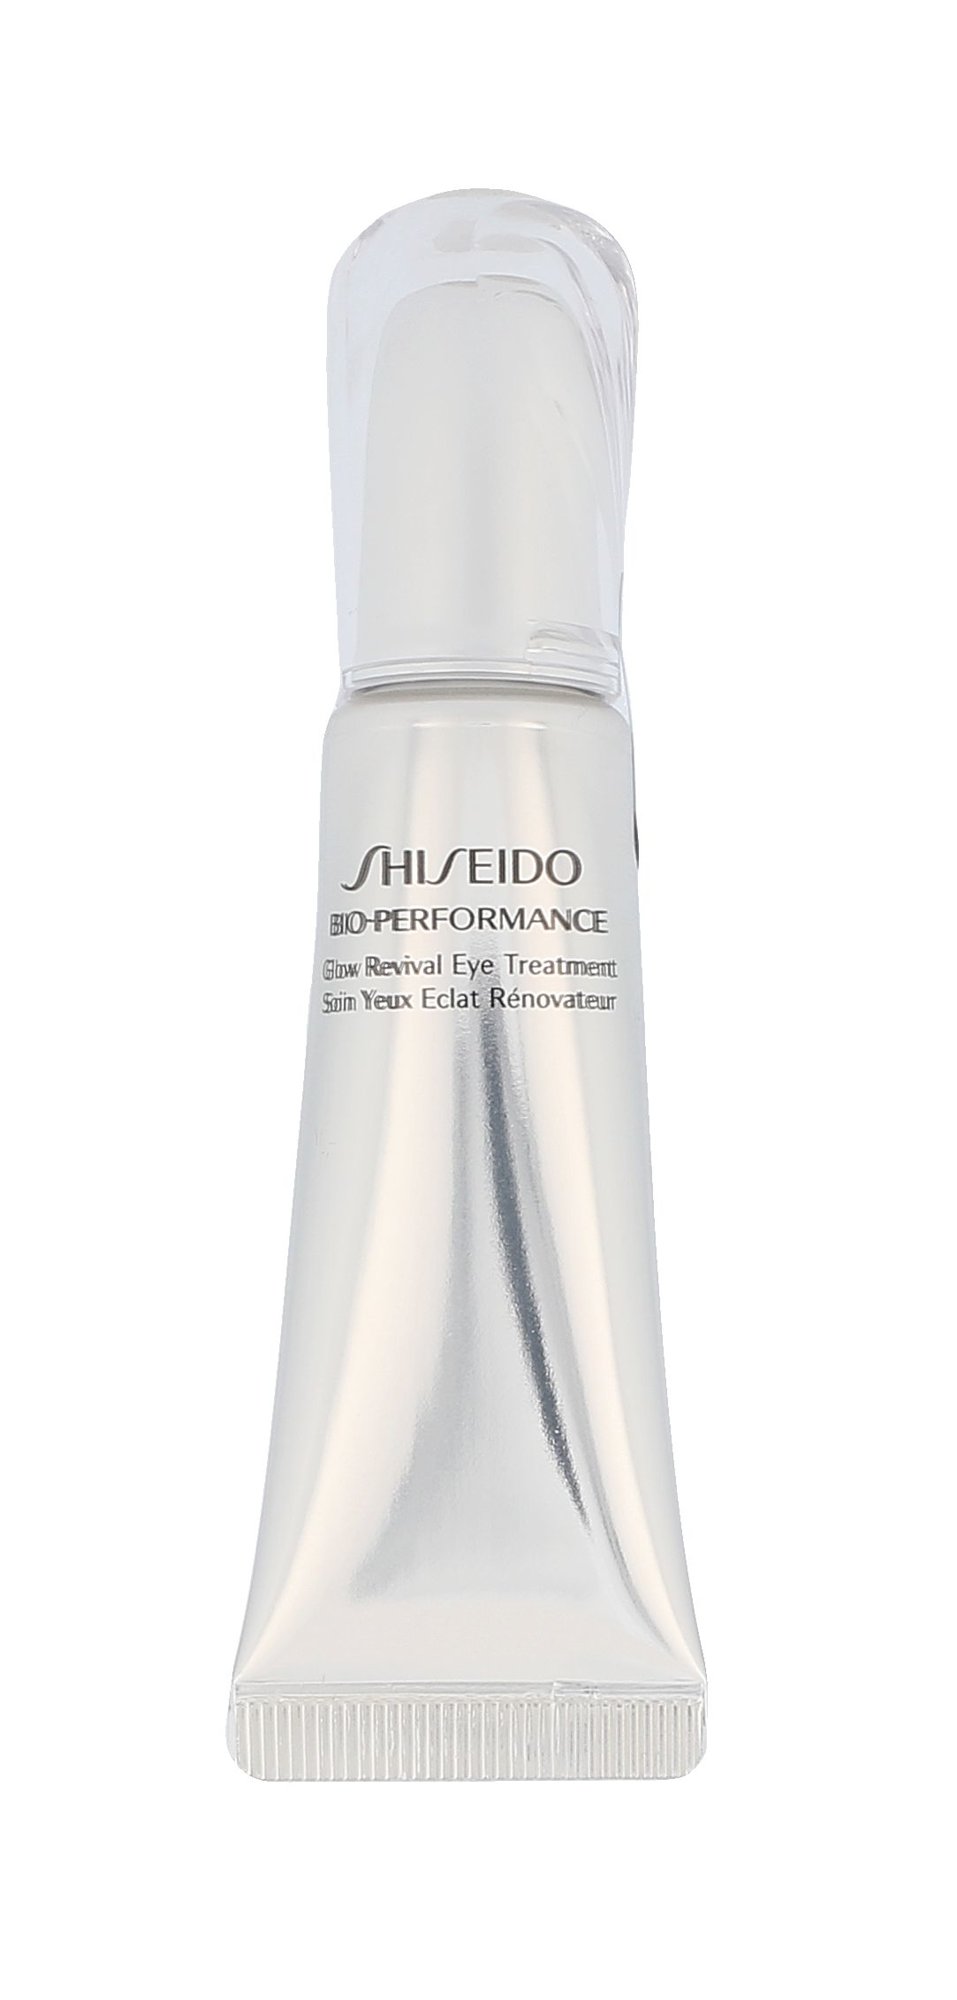 Shiseido Bio-Performance Glow Revival Eye Treatment 15ml paakių kremas Testeris